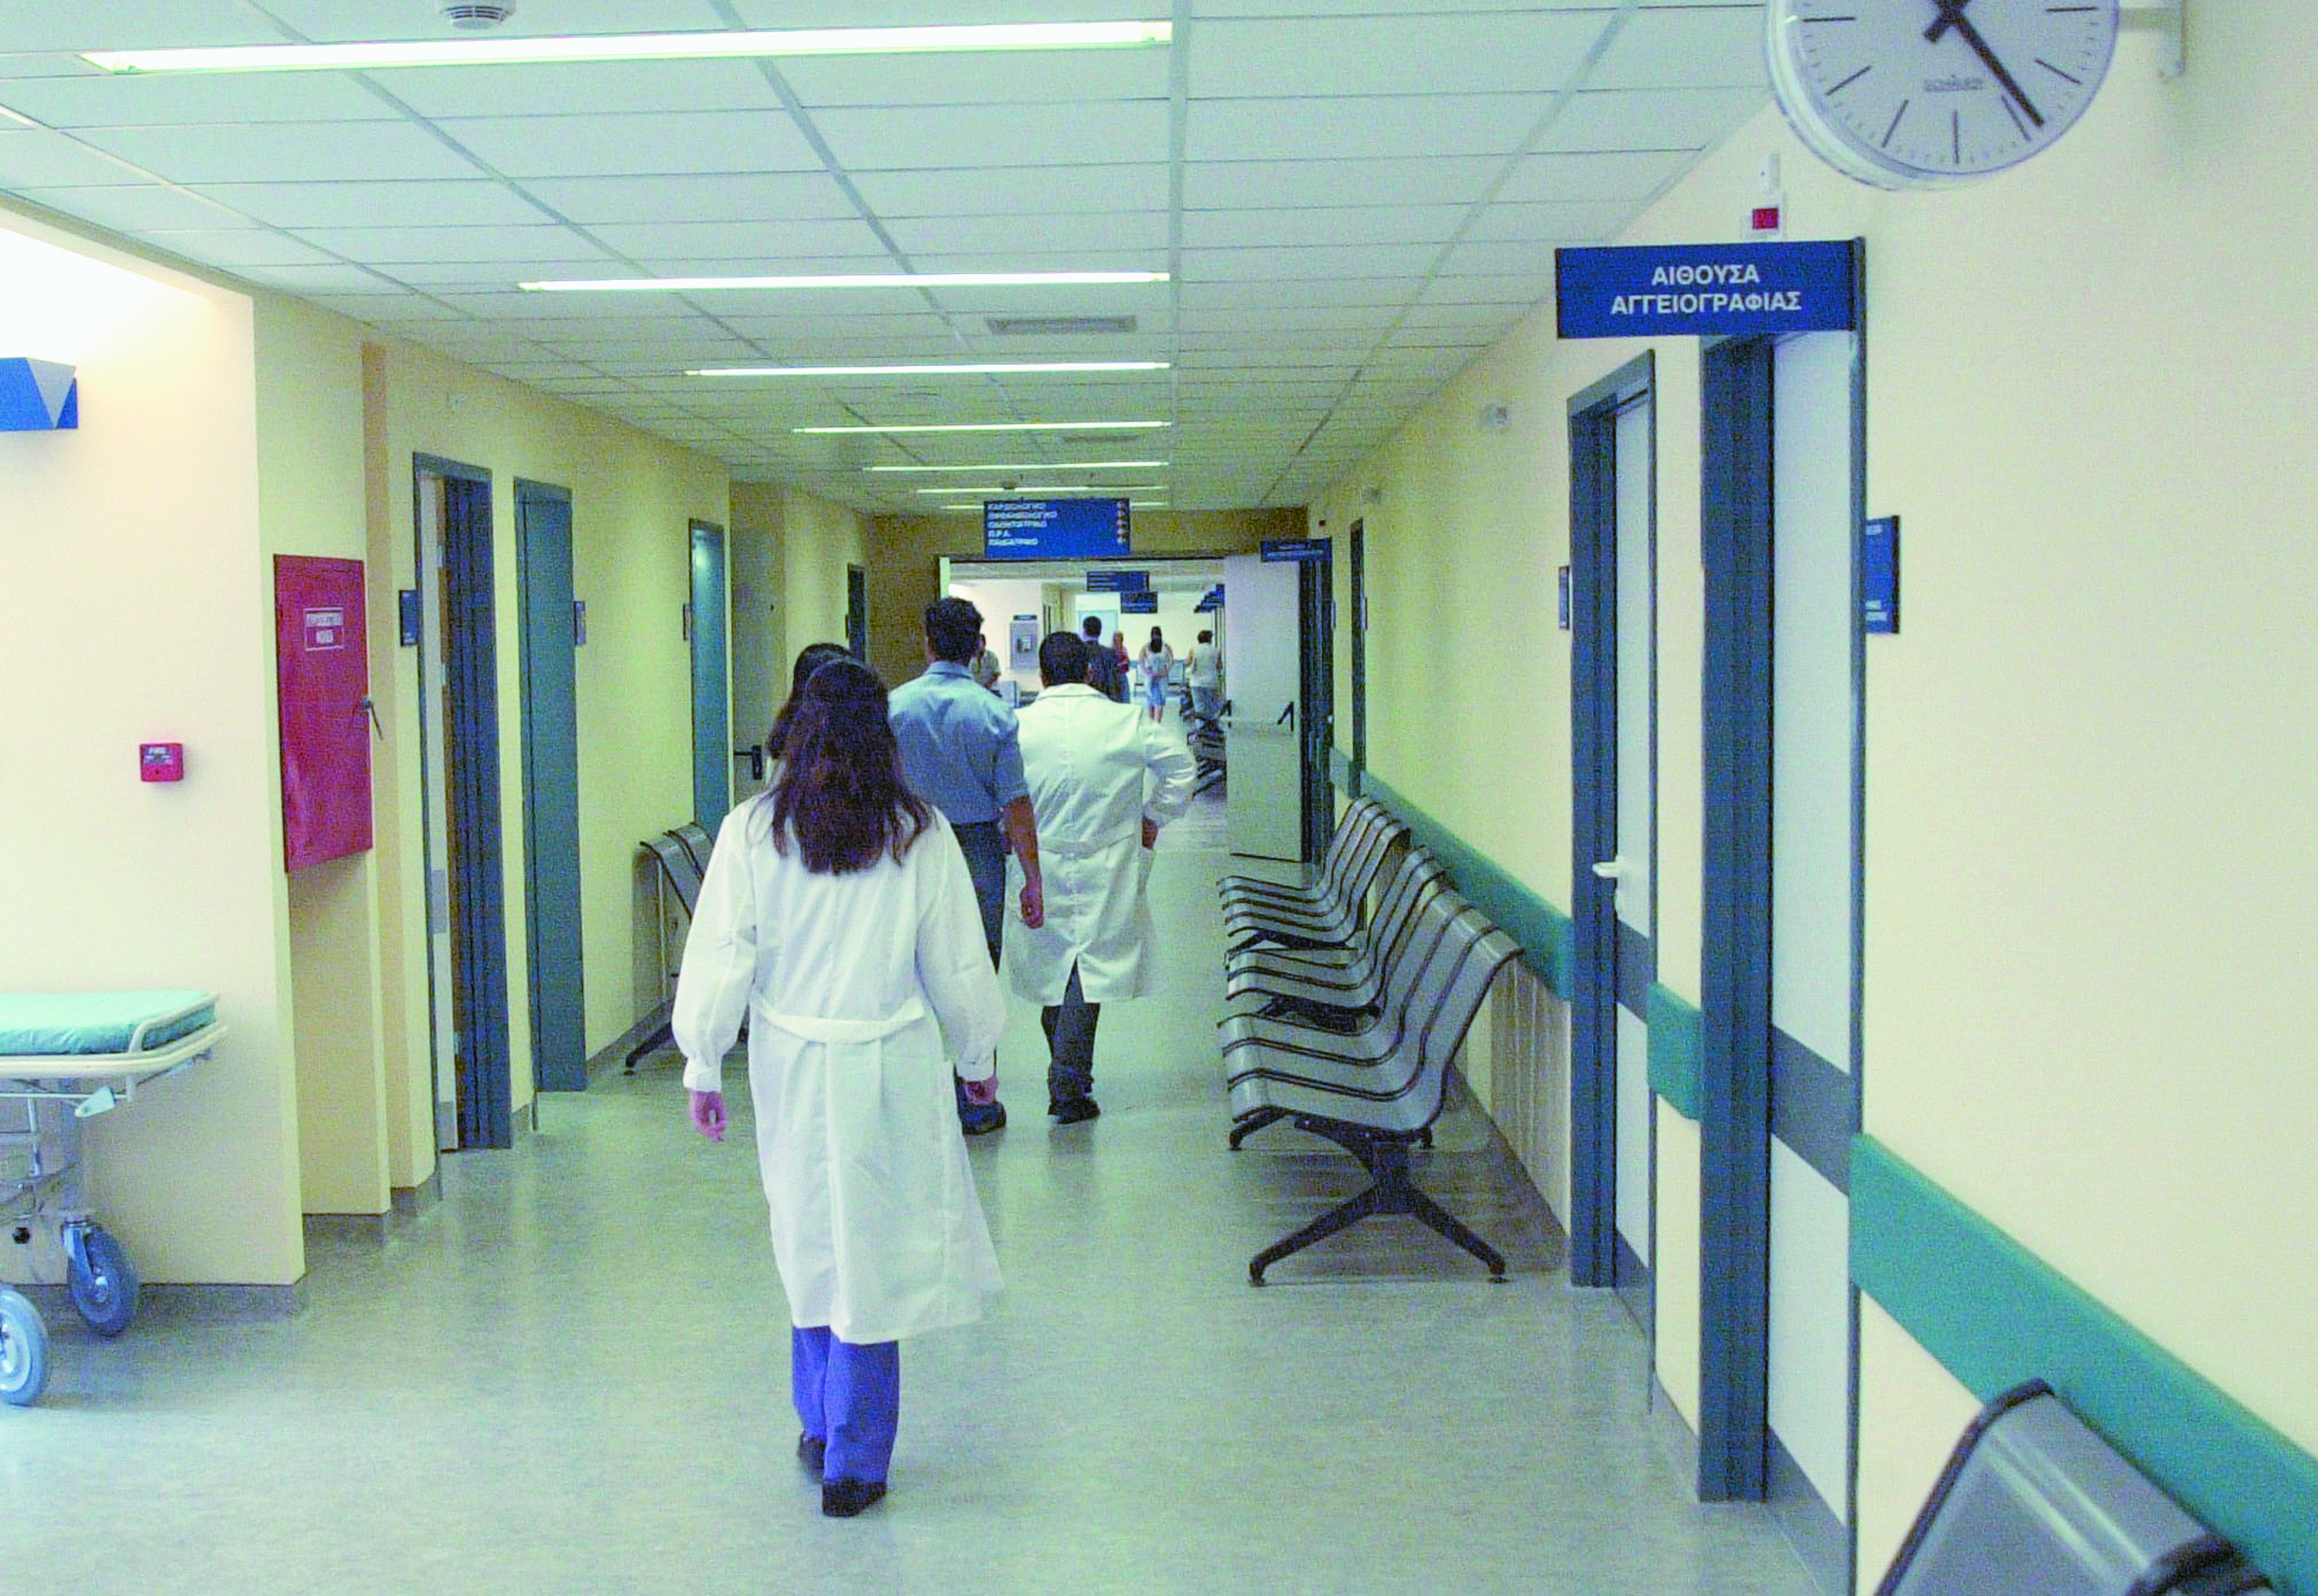 Υπουργείο Υγείας: Τέλος τα ιδιωτικά συνεργεία καθαριότητας στα νοσοκομεία